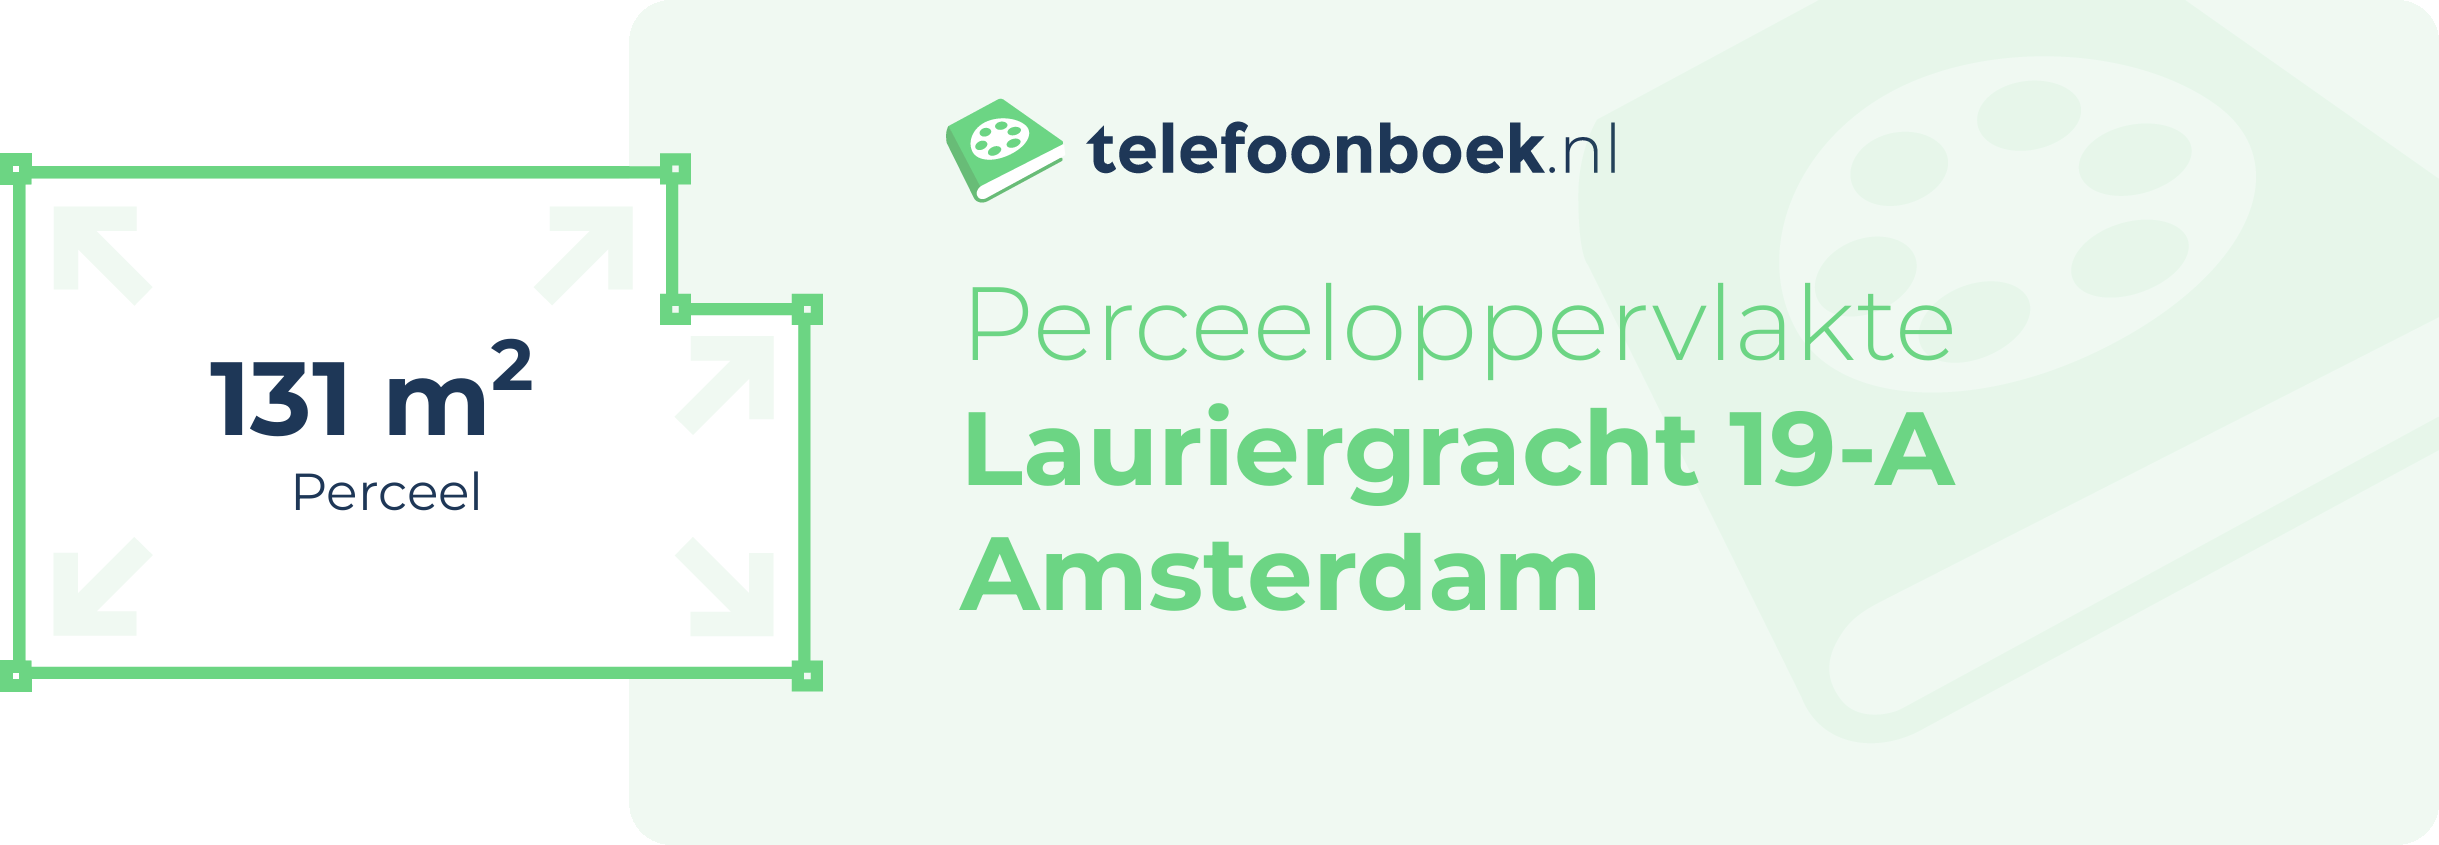 Perceeloppervlakte Lauriergracht 19-A Amsterdam